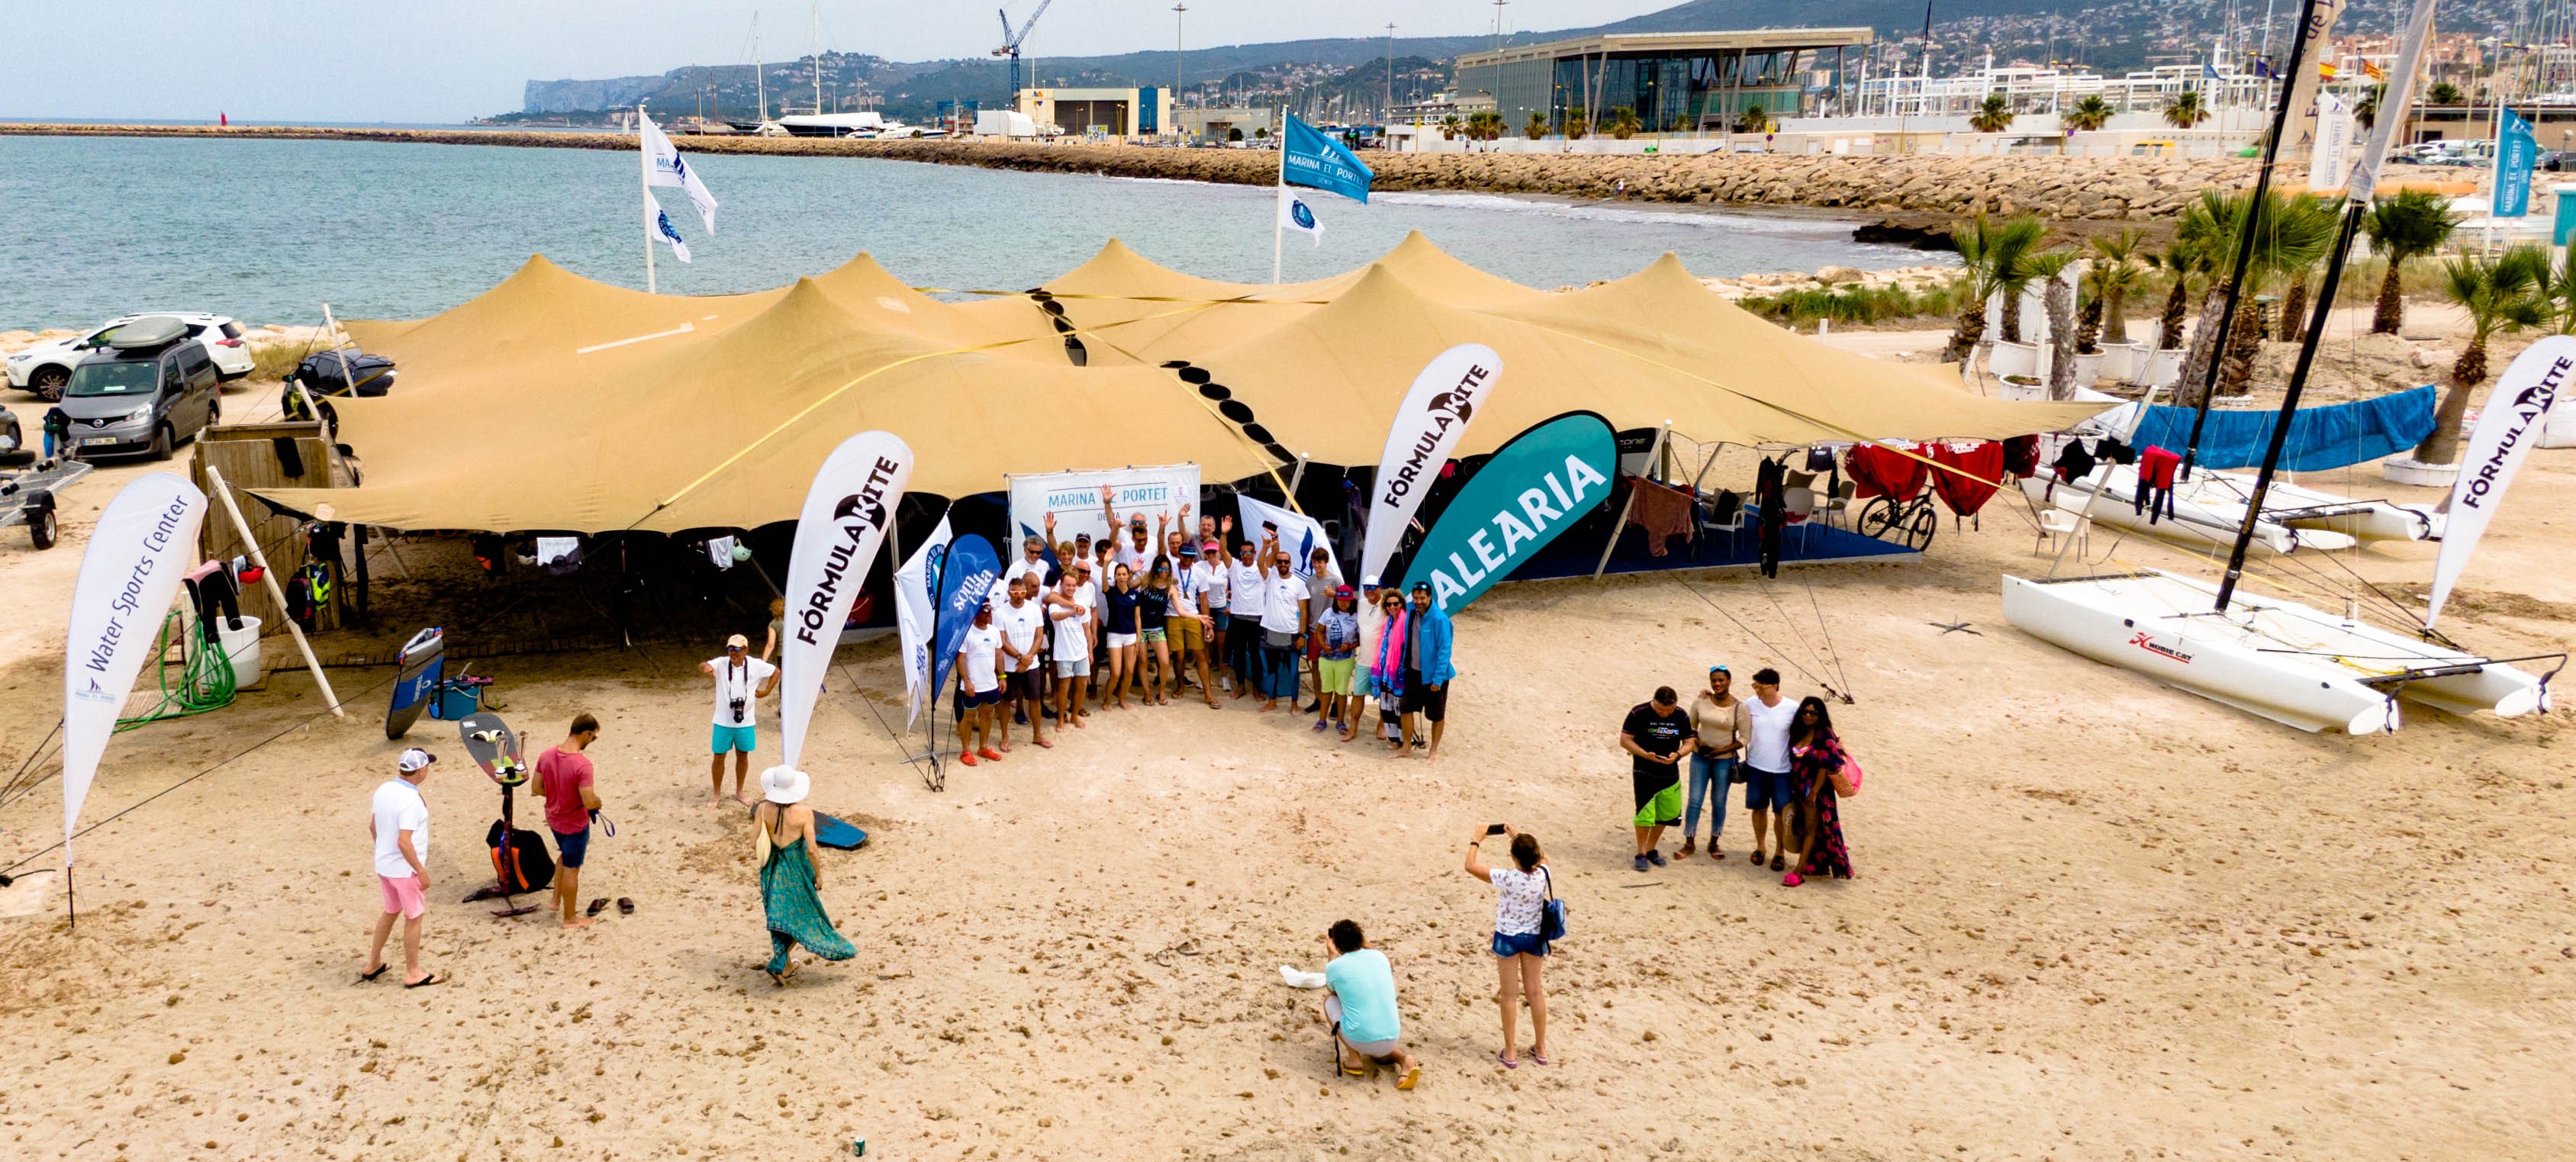 Campaña de limpieza de la costa este domingo en Marina el Portet